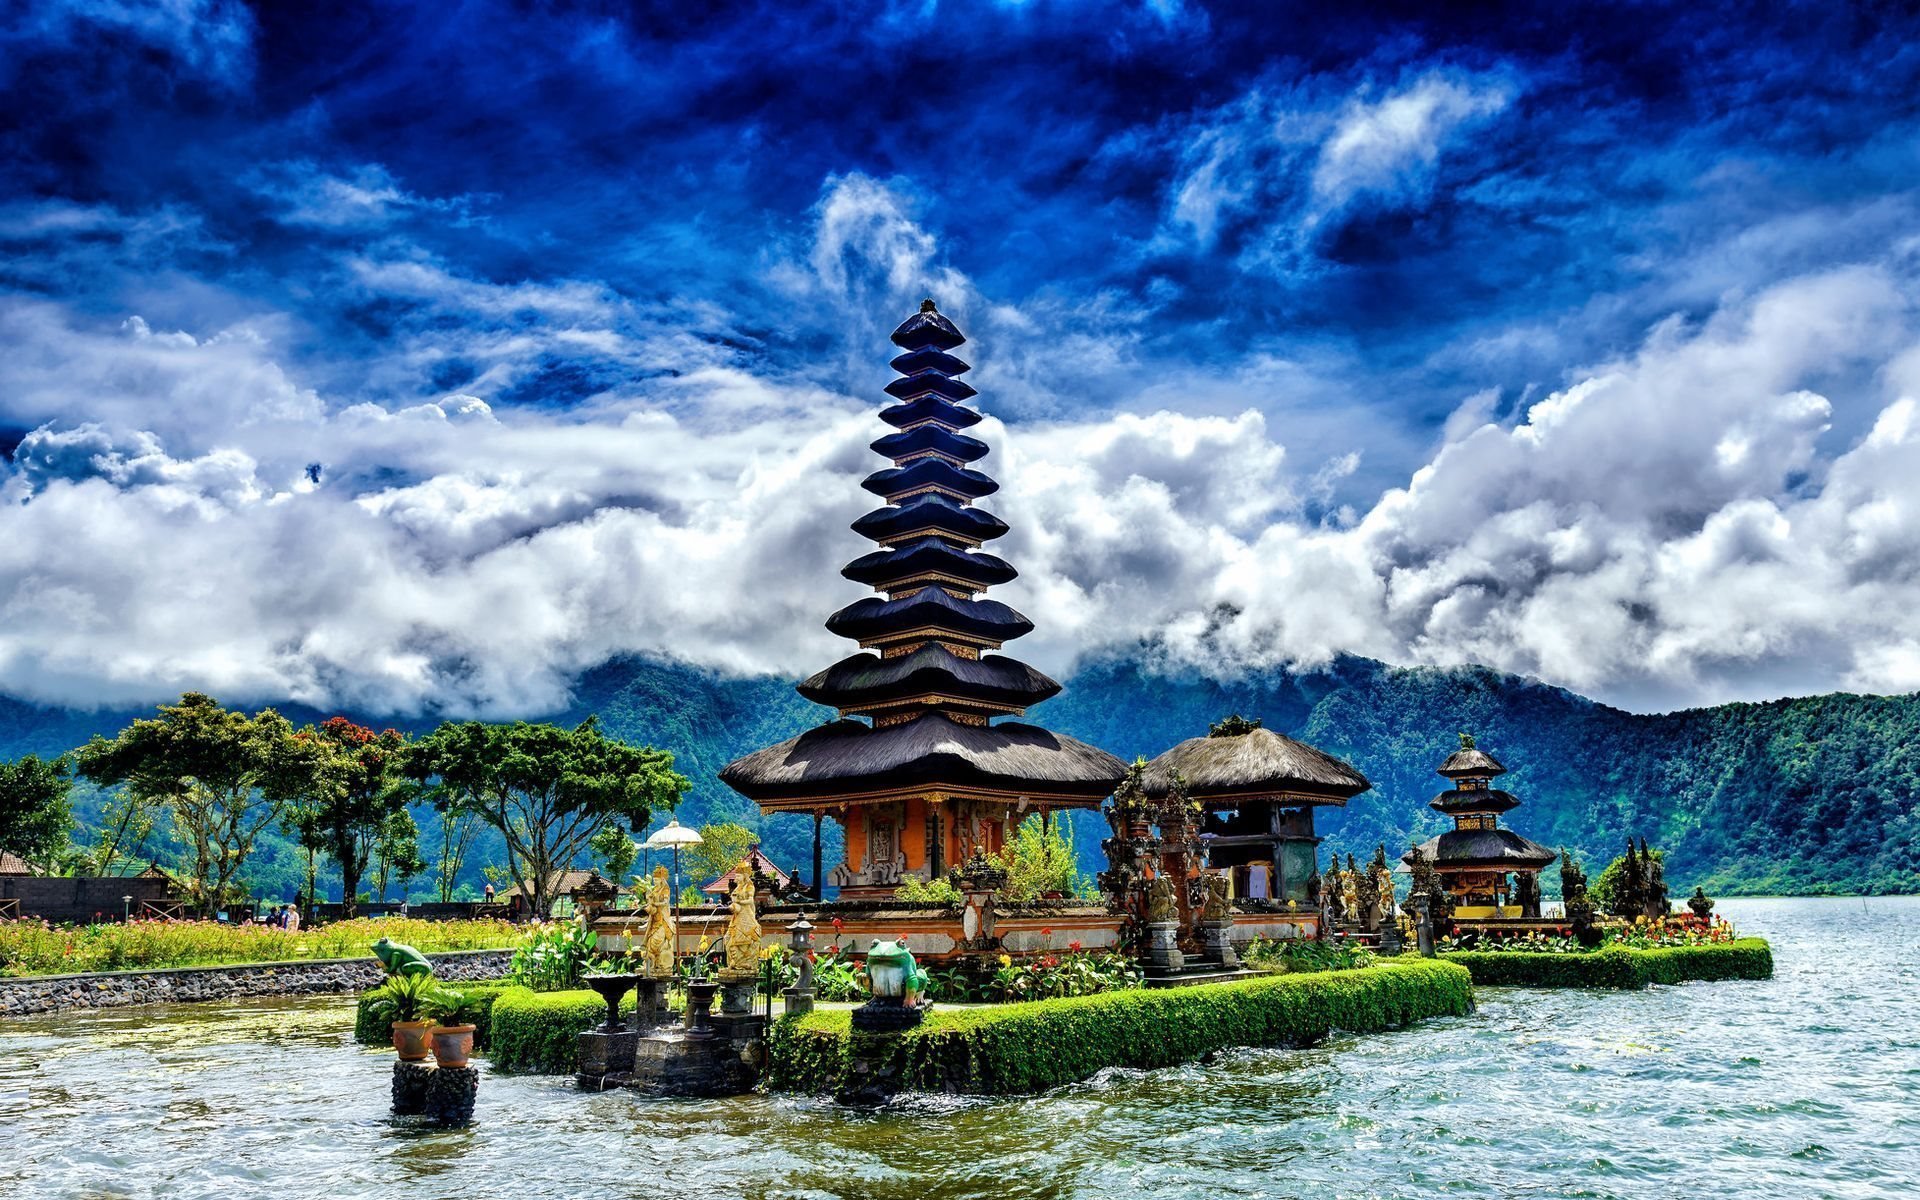 Download wallpapers lake beratan bali  indonesia for 